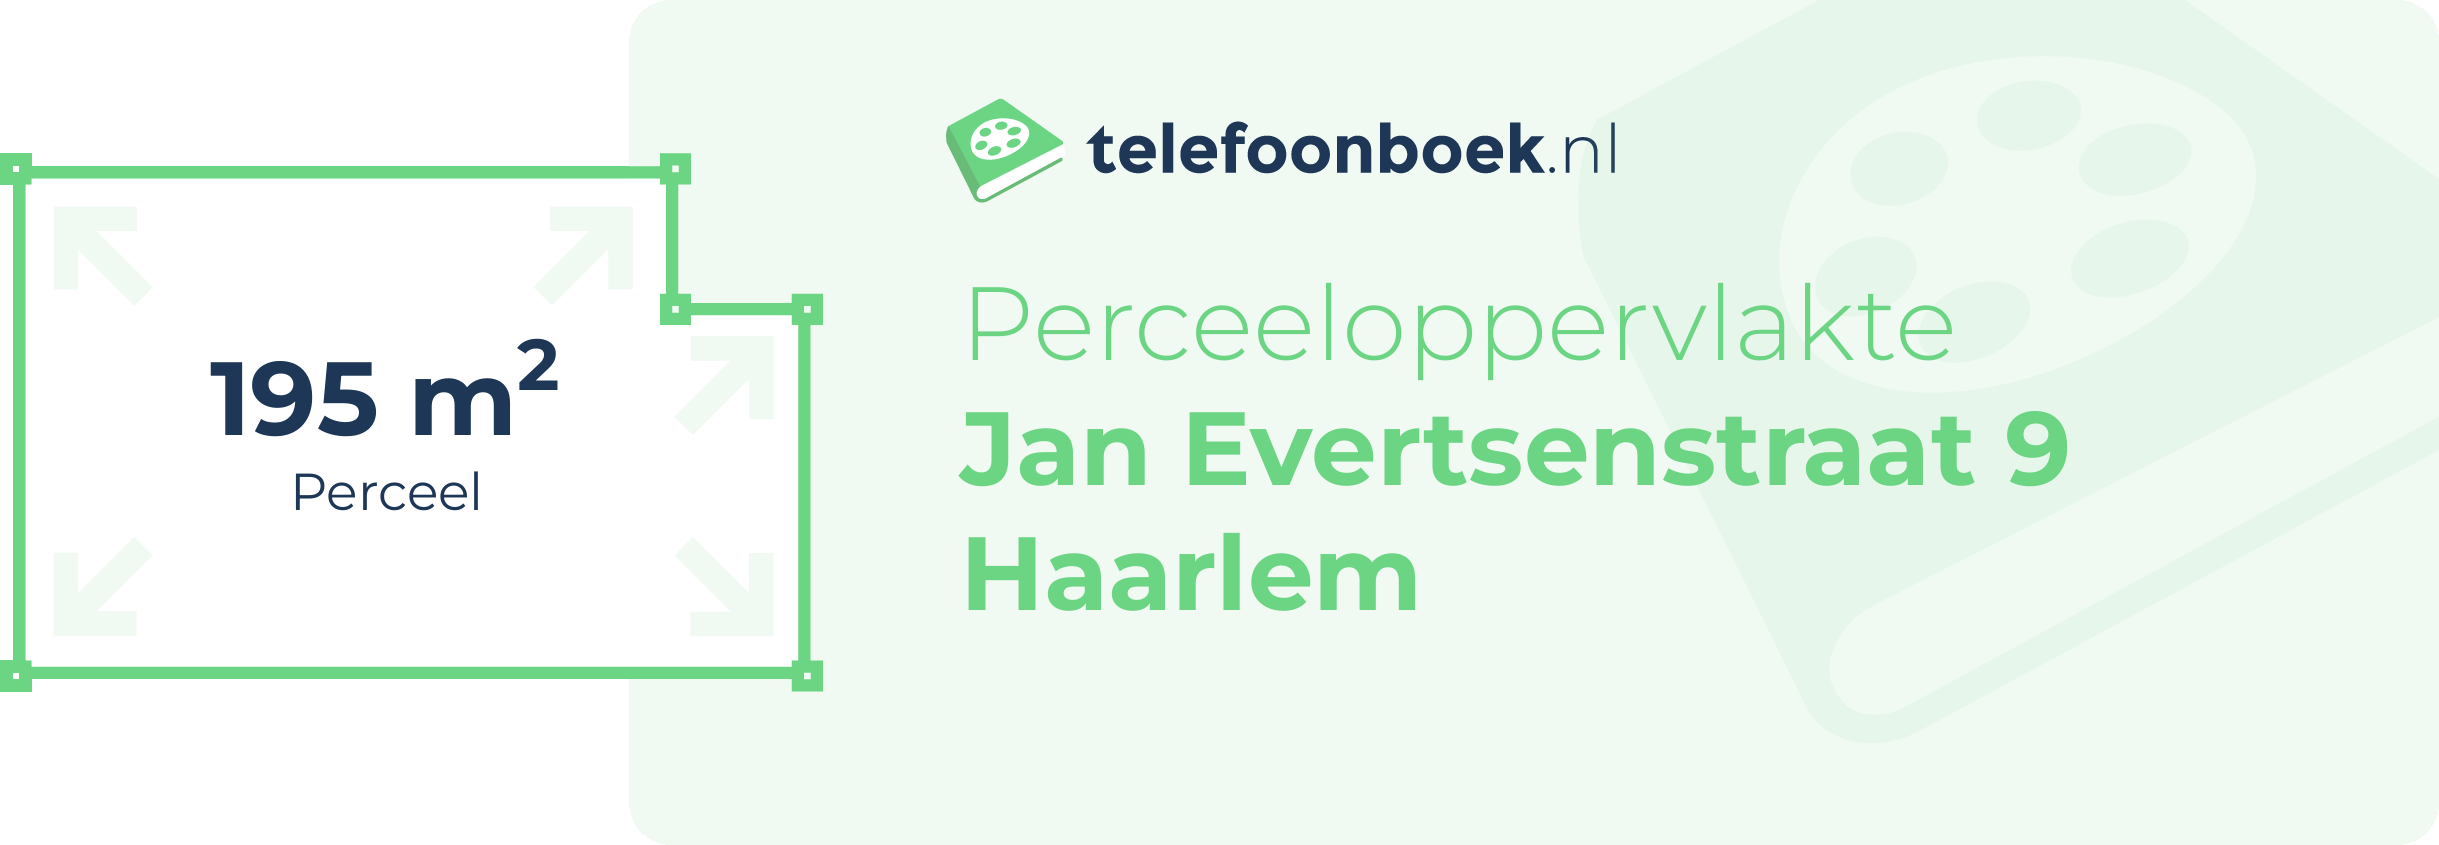 Perceeloppervlakte Jan Evertsenstraat 9 Haarlem